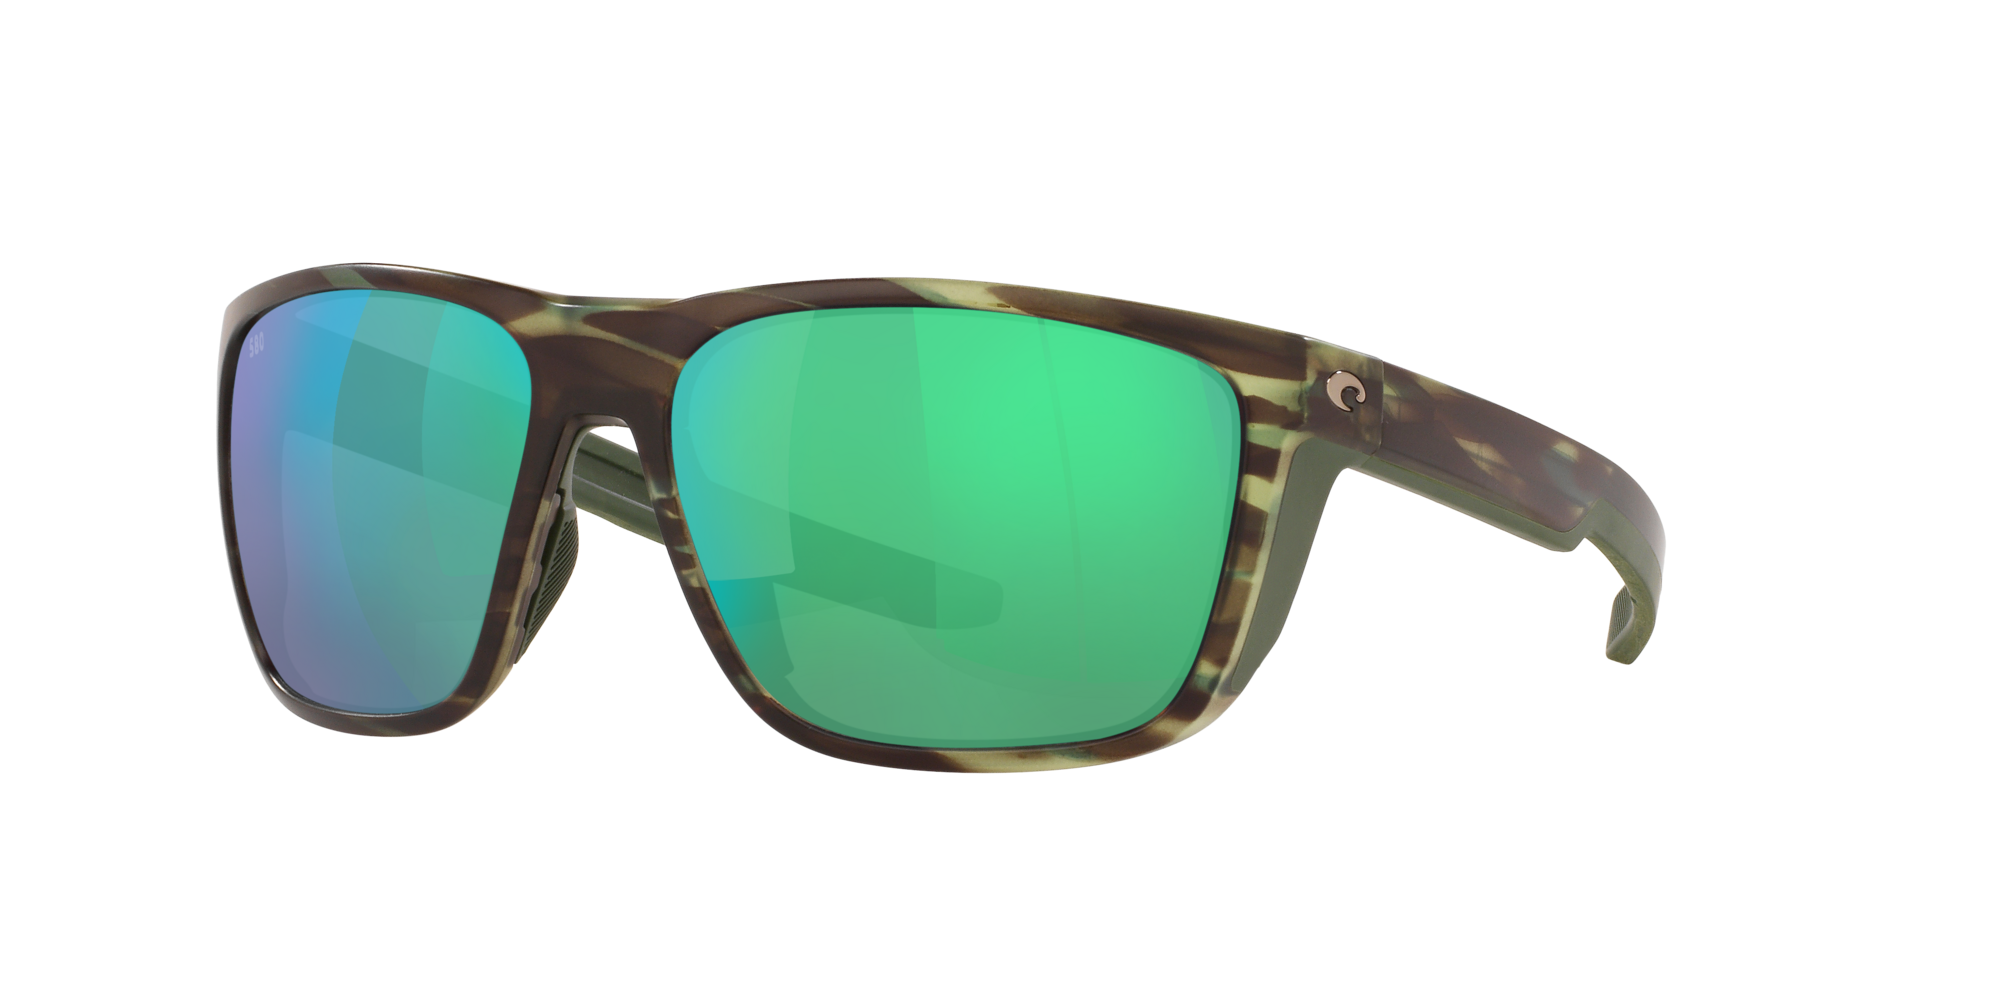 Ferg Polarized Sunglasses in Green Mirror | Costa Del Mar®